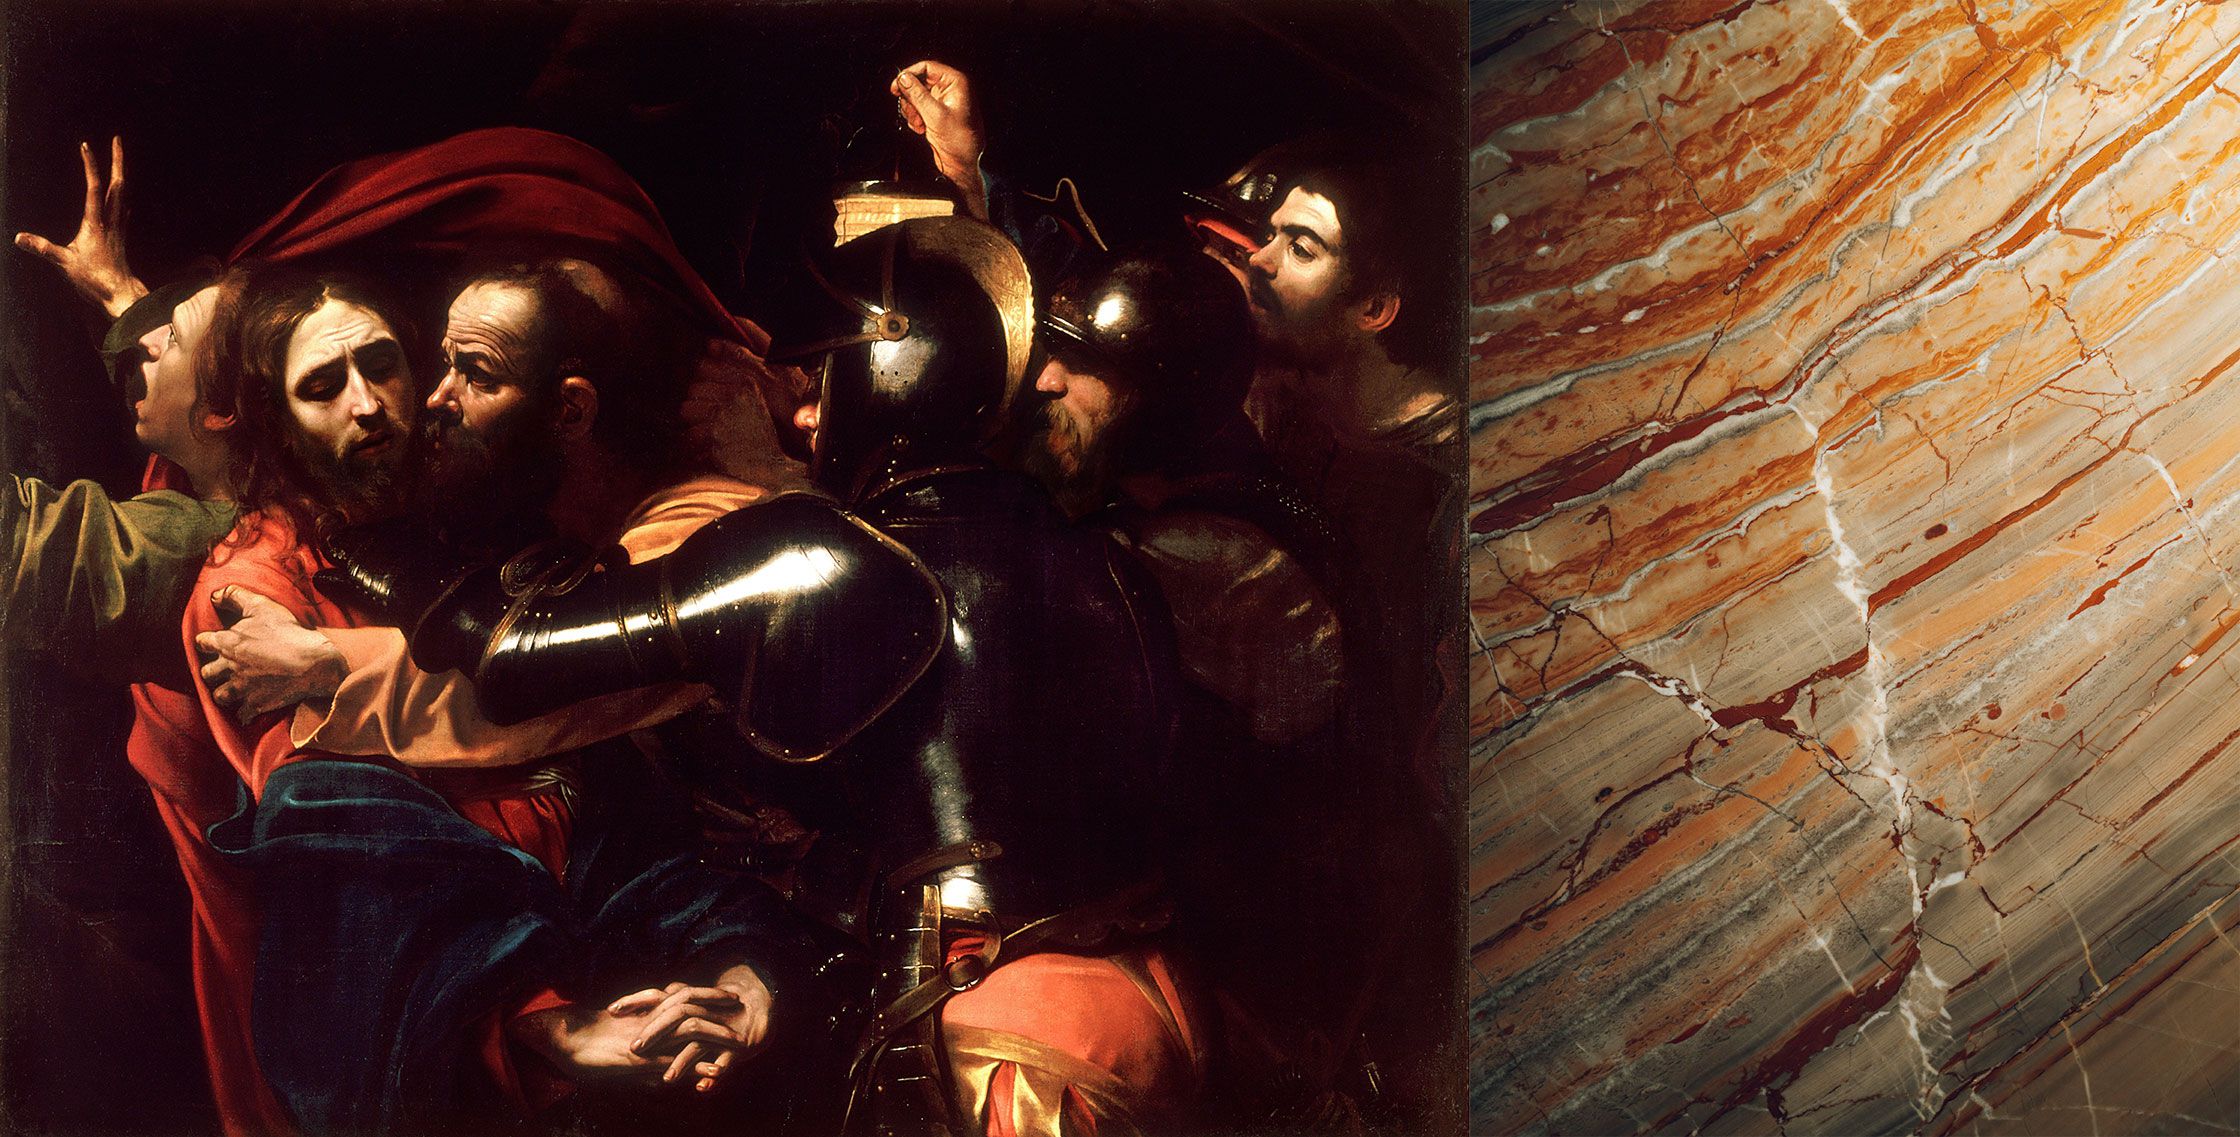 Ombra di Caravaggio | カラバッジョの影